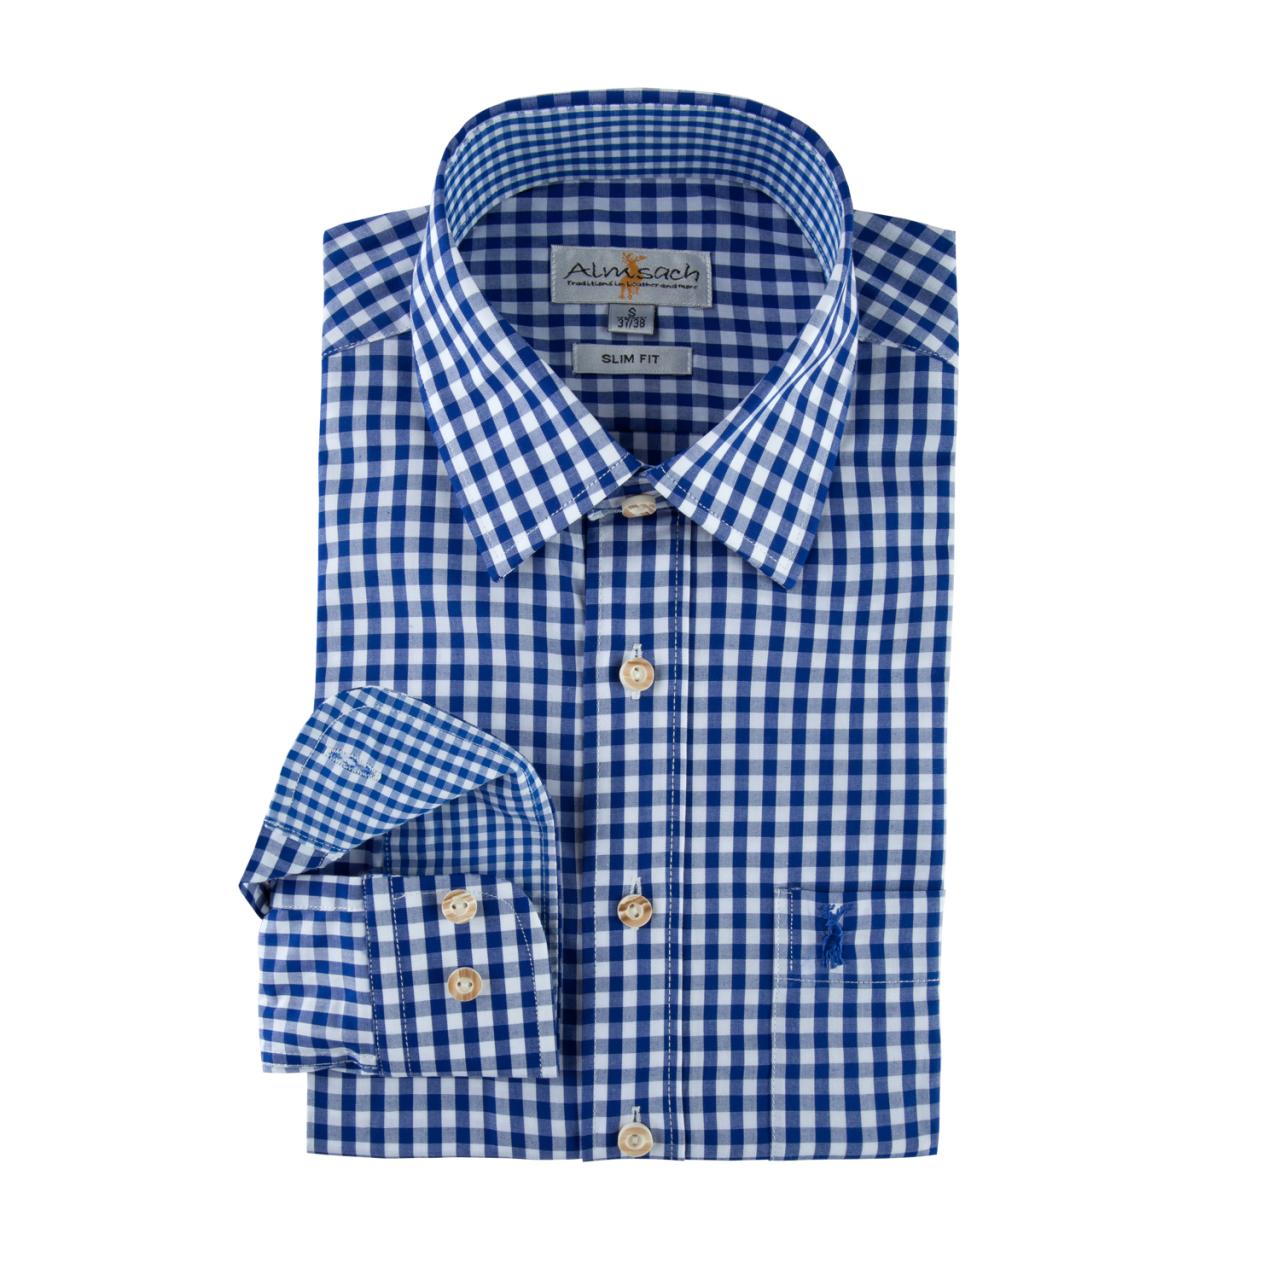 Trachten-hemden Hemden Herren Freizeithemden Business Blau Weiß Almsach Langarm 